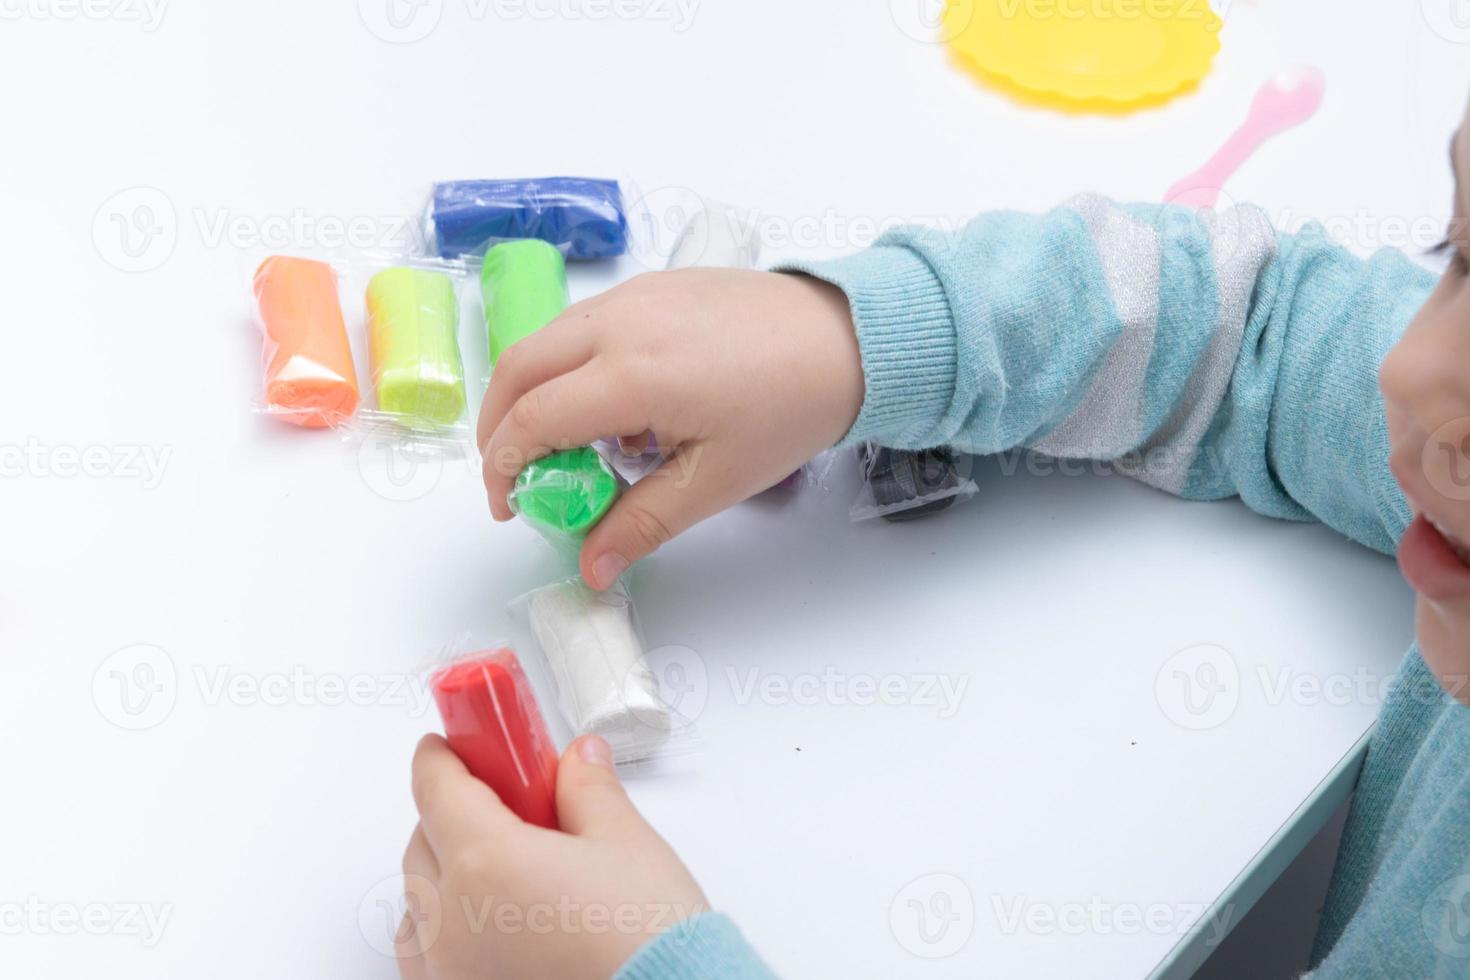 les mains des enfants jouent de la pâte pour la créativité des enfants. jeu de société pour le développement de la motricité fine photo